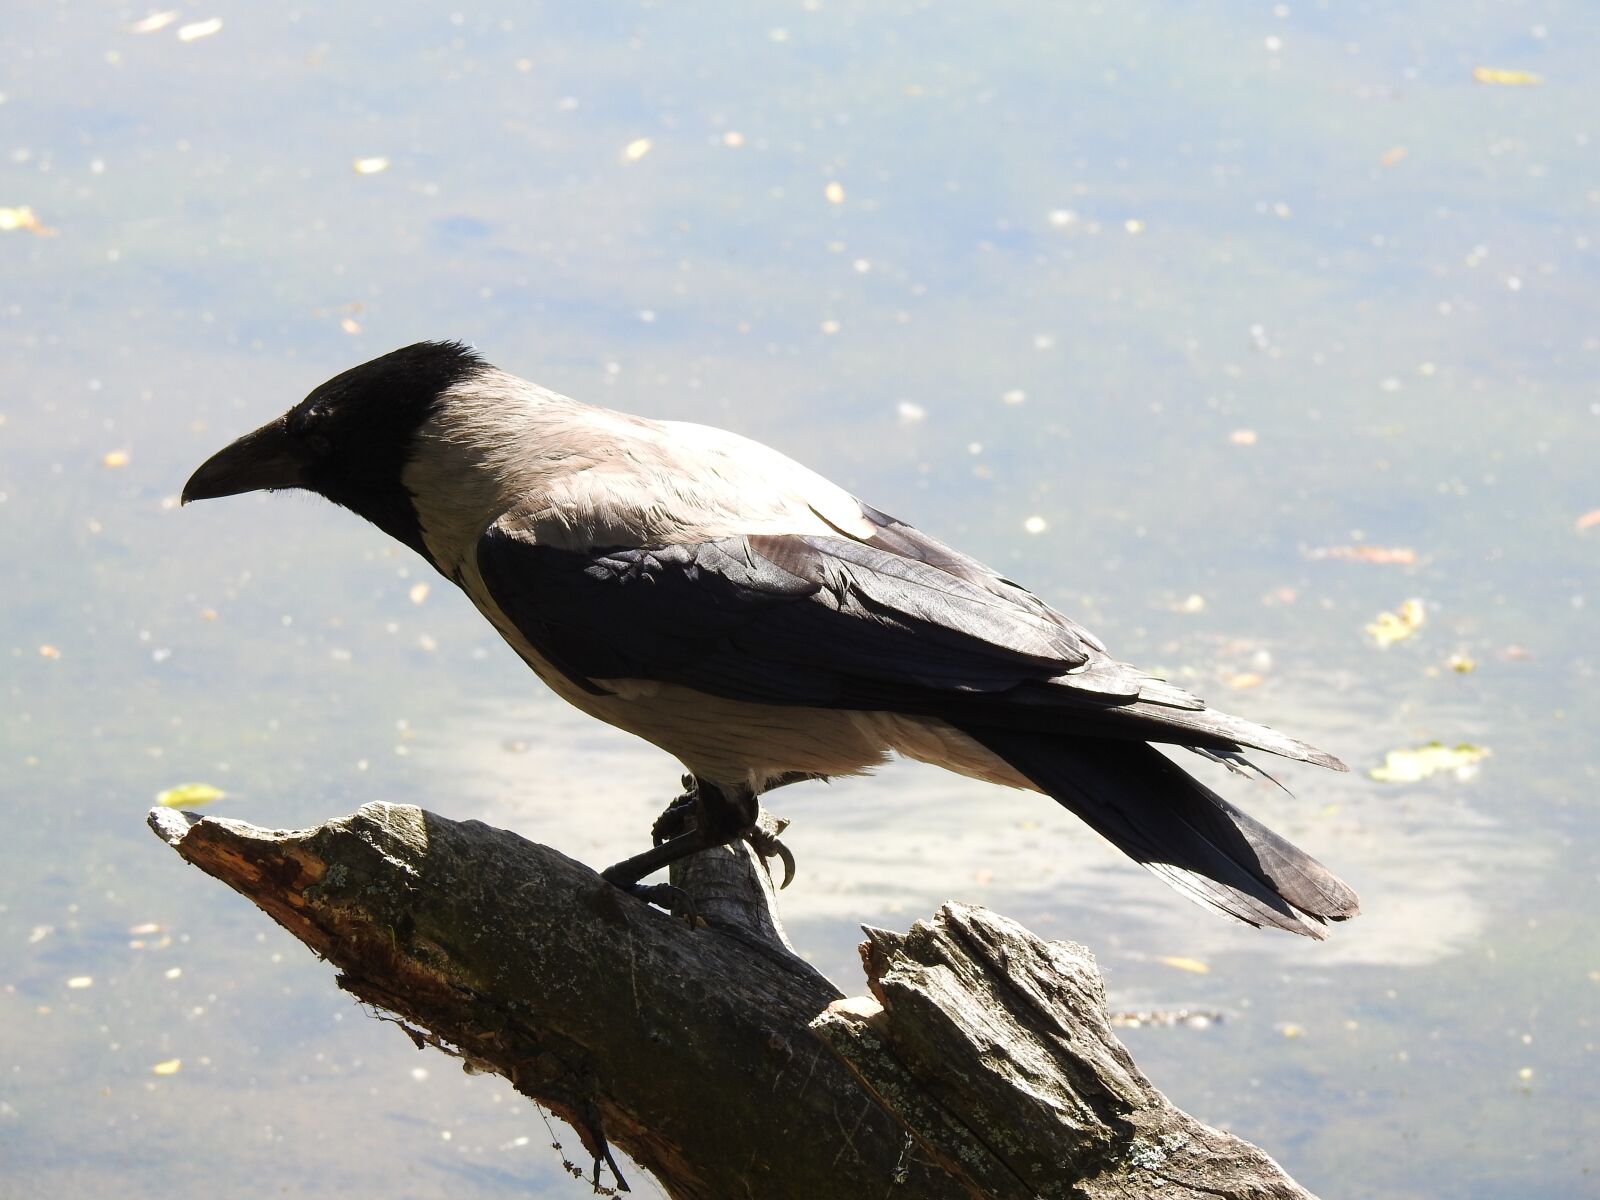 Nikon Coolpix P900 sample photo. Crow, bird, nature photography